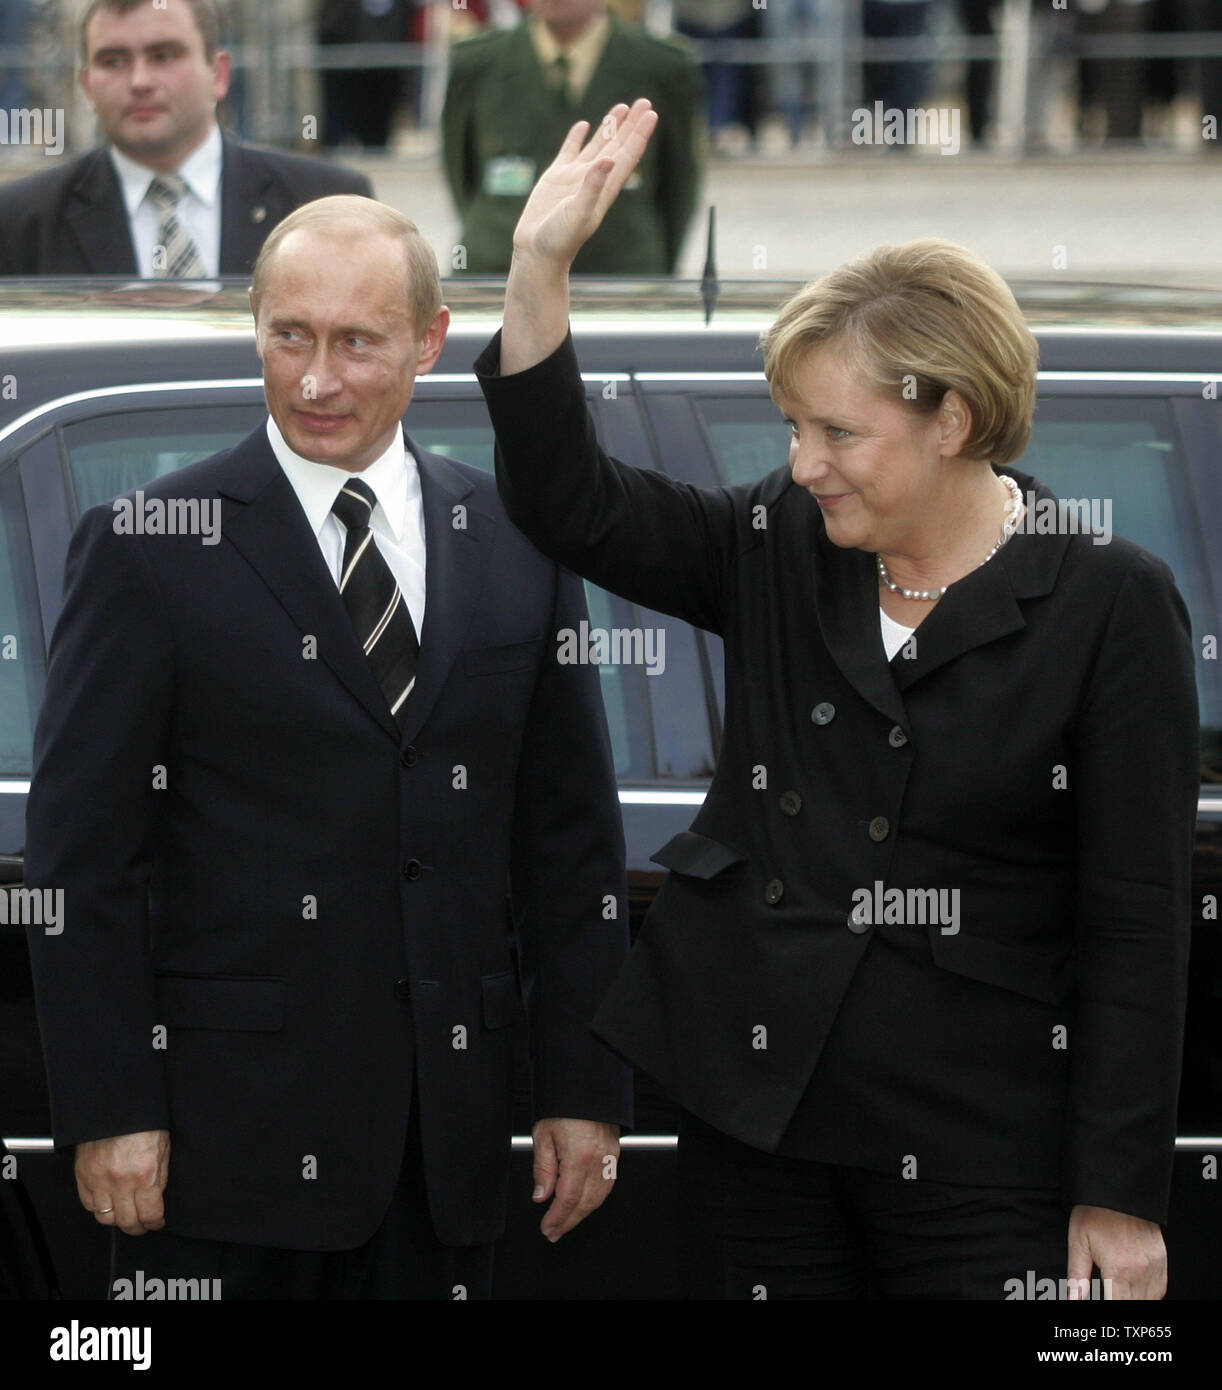 La chancelière allemande Angela Merkel (R) vagues comme elle se félicite le président russe Vladimir Poutine lors des négociations bilatérales à Dresde le 10 octobre 2006. Poutine et Merkel va discuter du programme nucléaire de l'Iran et de plus en plus de liens économiques germano-russe, également les deux dirigeants vont rejoindre les deux jours de la conférence de Dialogue Petersburg germano-russe dans la ville allemande de l'Est. (Photo d'UPI/Anatoli Zhdanov) Banque D'Images